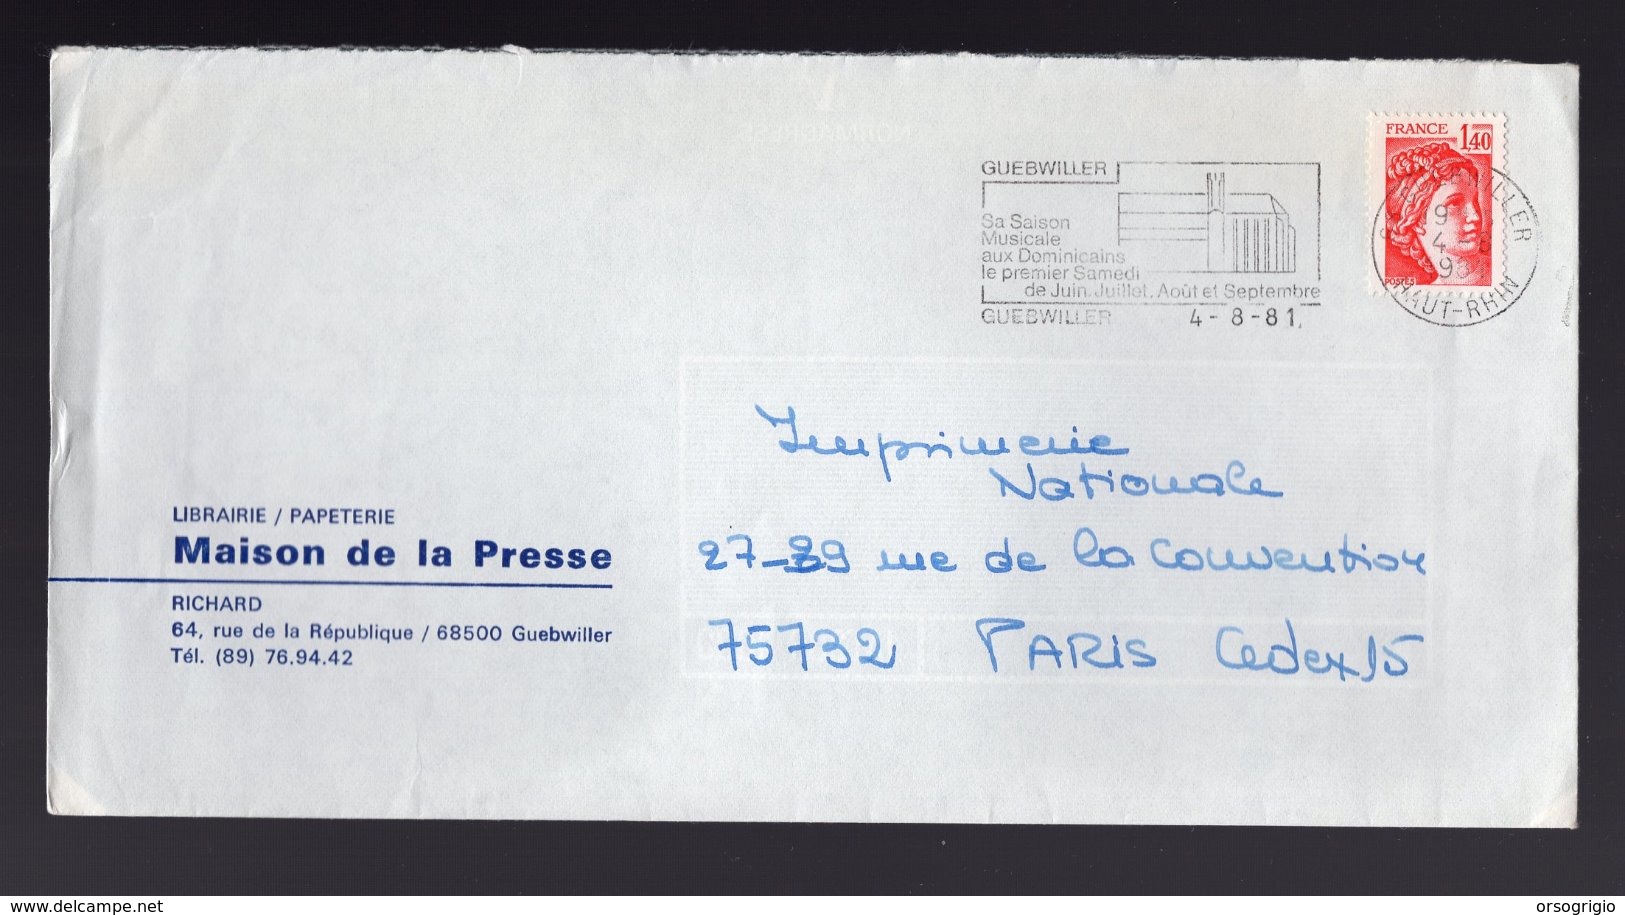 FRANCIA - GUEBWILLER  HAUT-RHIN  1981 - Annullamenti Meccaniche (Varie)